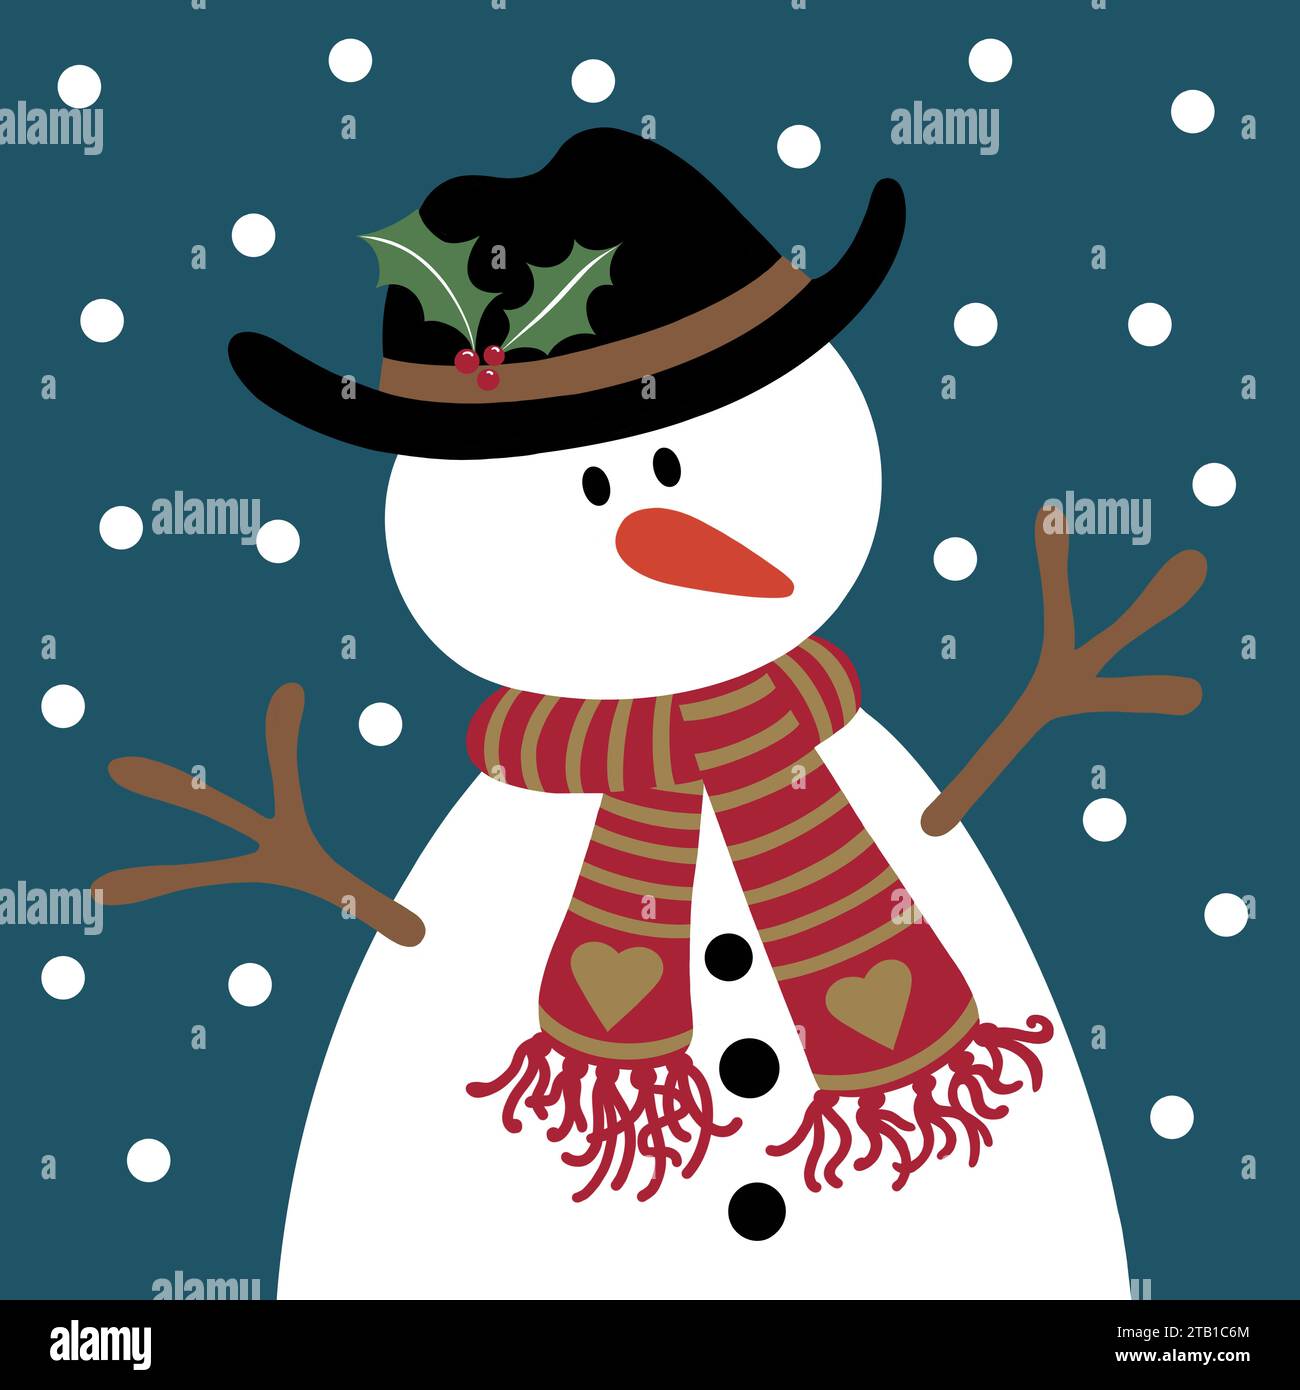 Bonhomme de neige de dessin animé mignon sur un jour de neige. Motif bonhomme de neige de Noël. Il porte un chapeau et une écharpe rayée confortable, a un nez de carotte et de petits bras de bâton. Banque D'Images